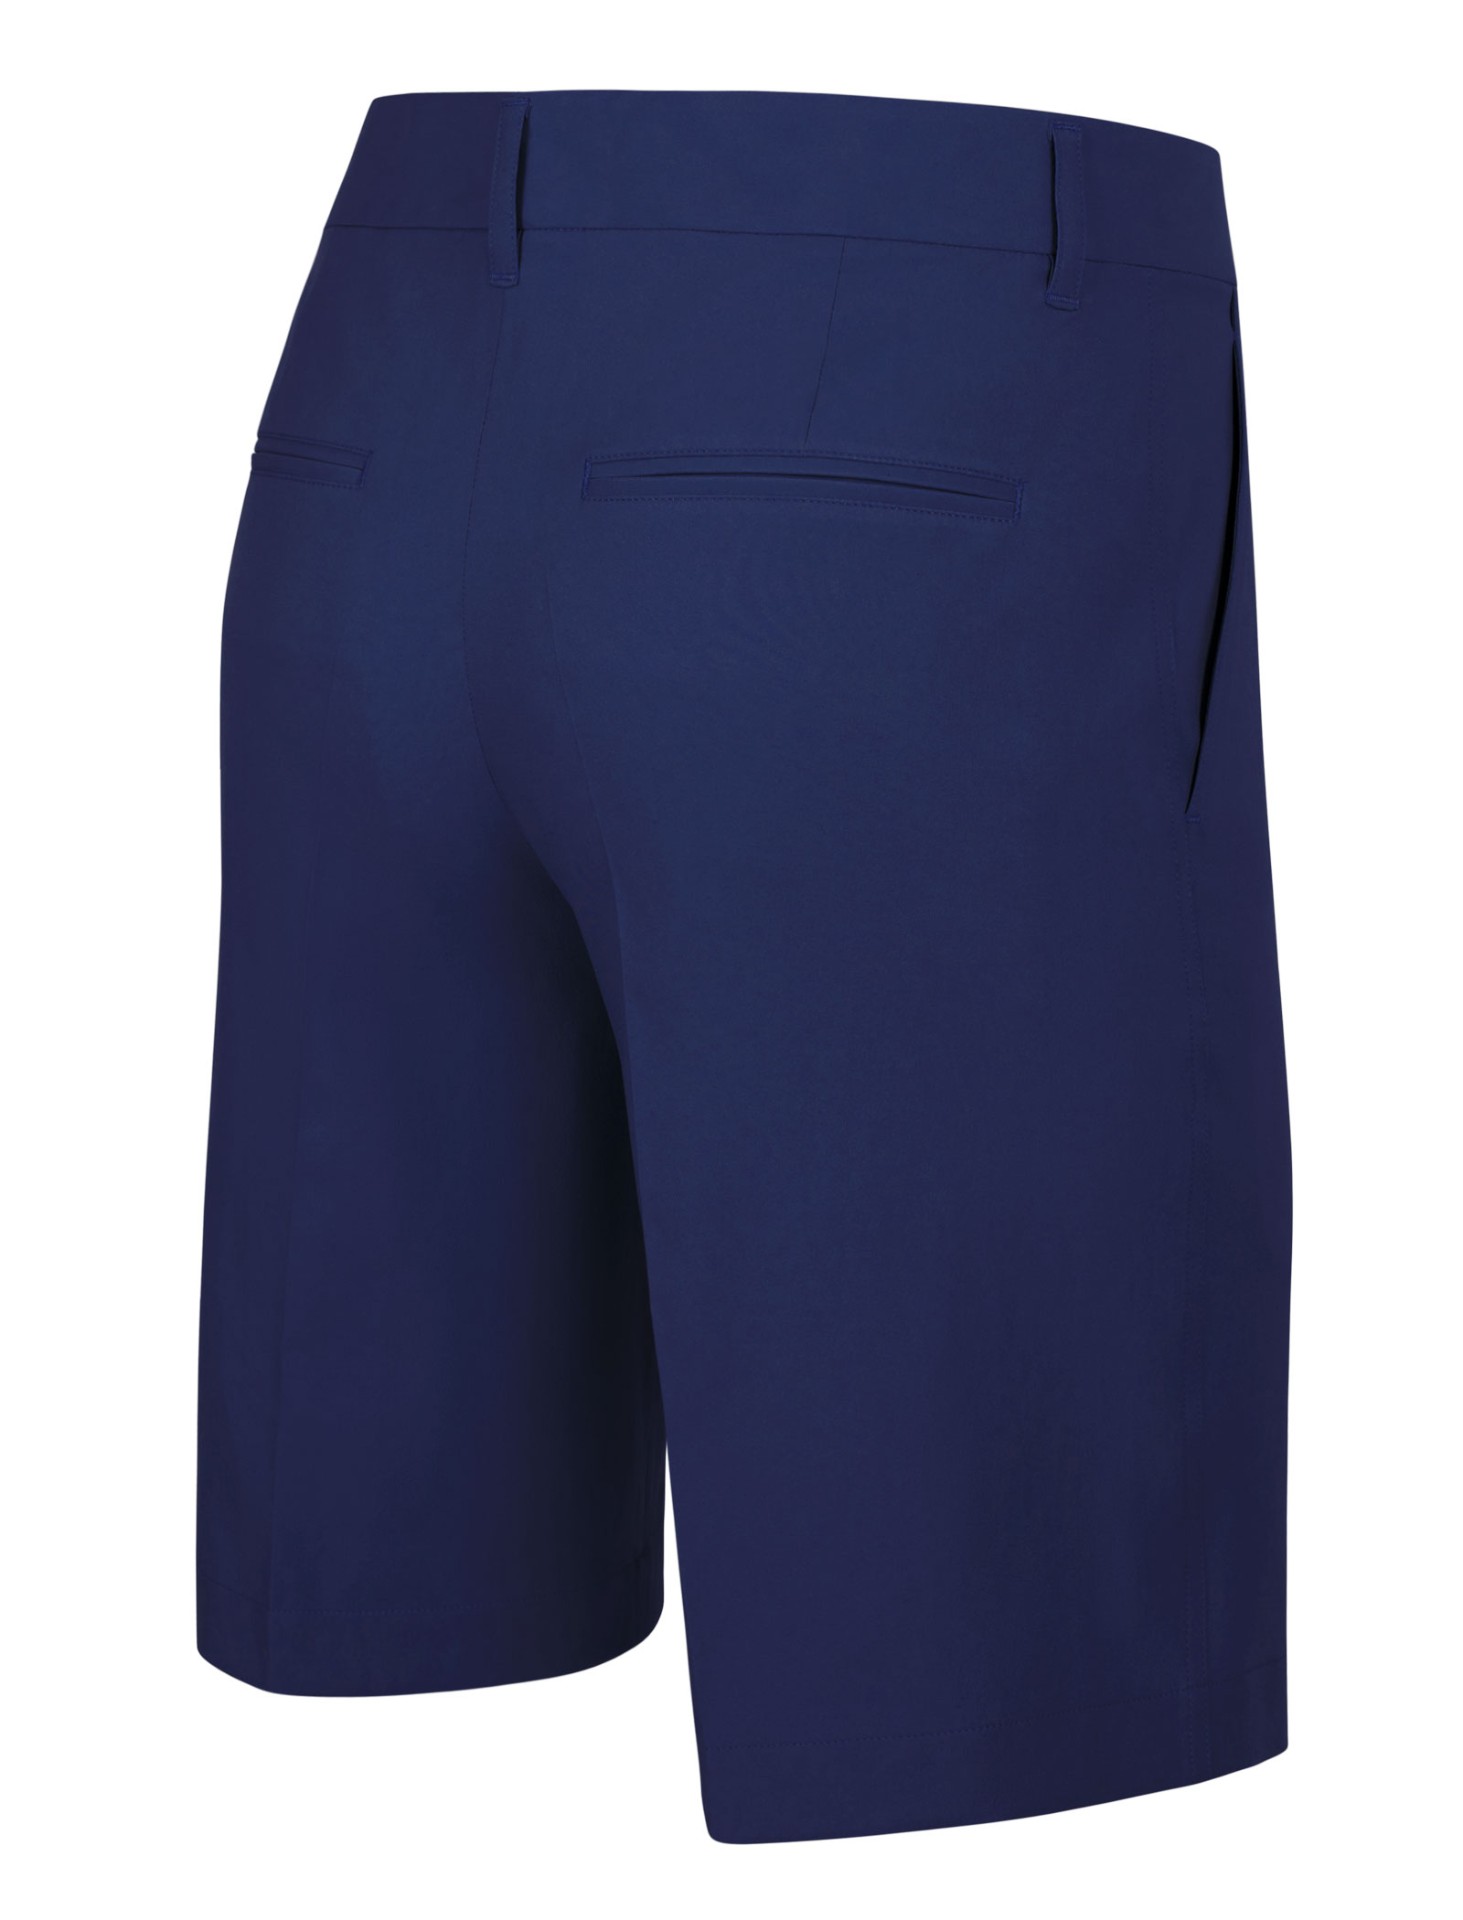 Quần Golf Shorts ARISLE Elite Vibrant Blue